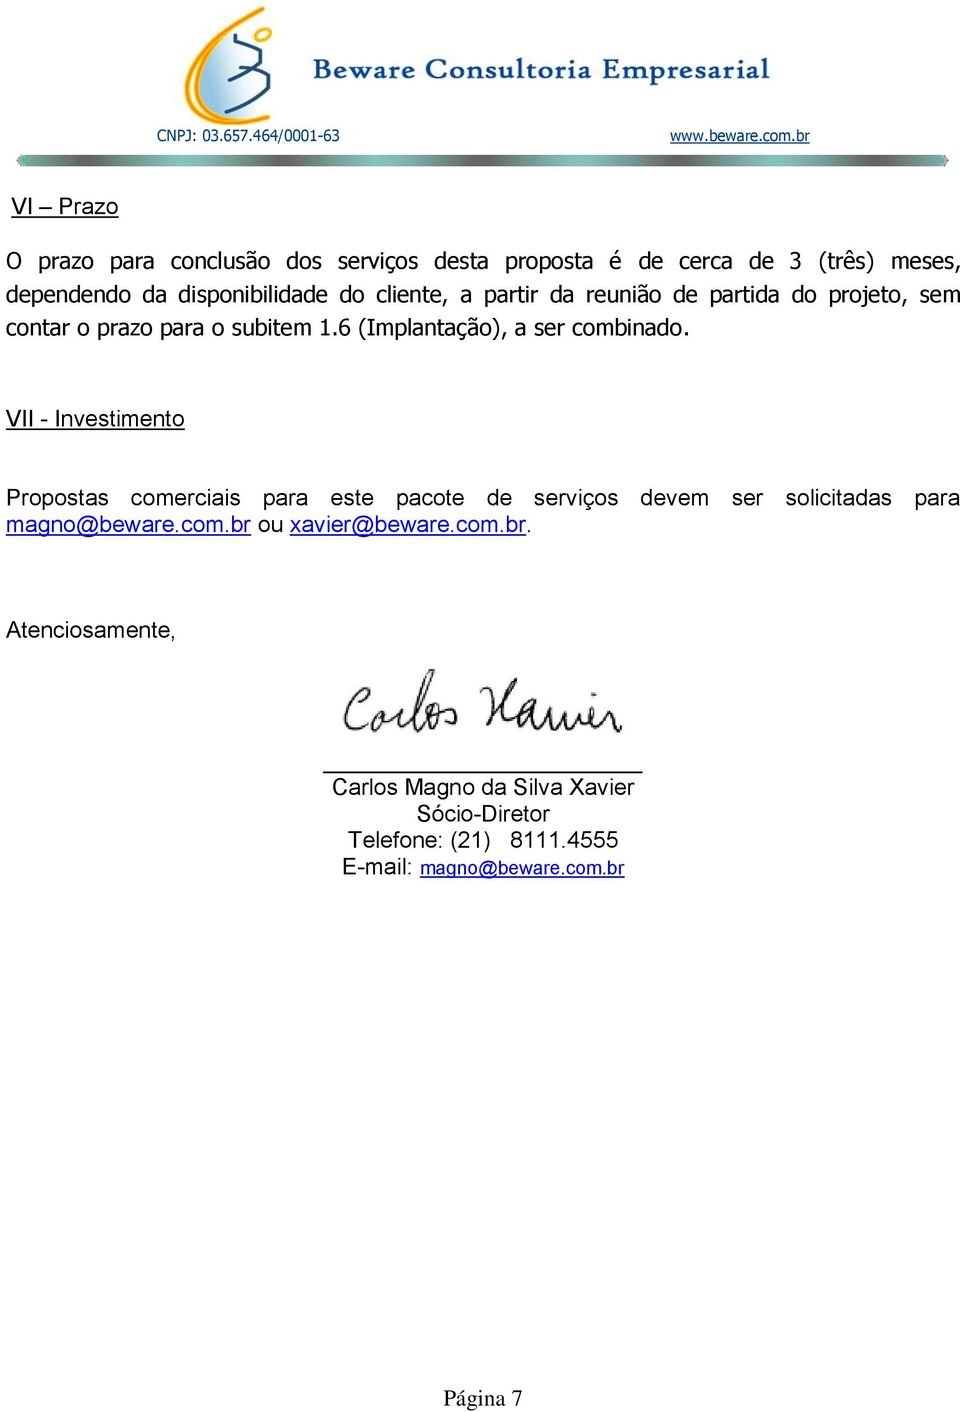 VII - Investimento Propostas comerciais para este pacote de serviços devem ser solicitadas para magno@beware.com.br ou xavier@beware.